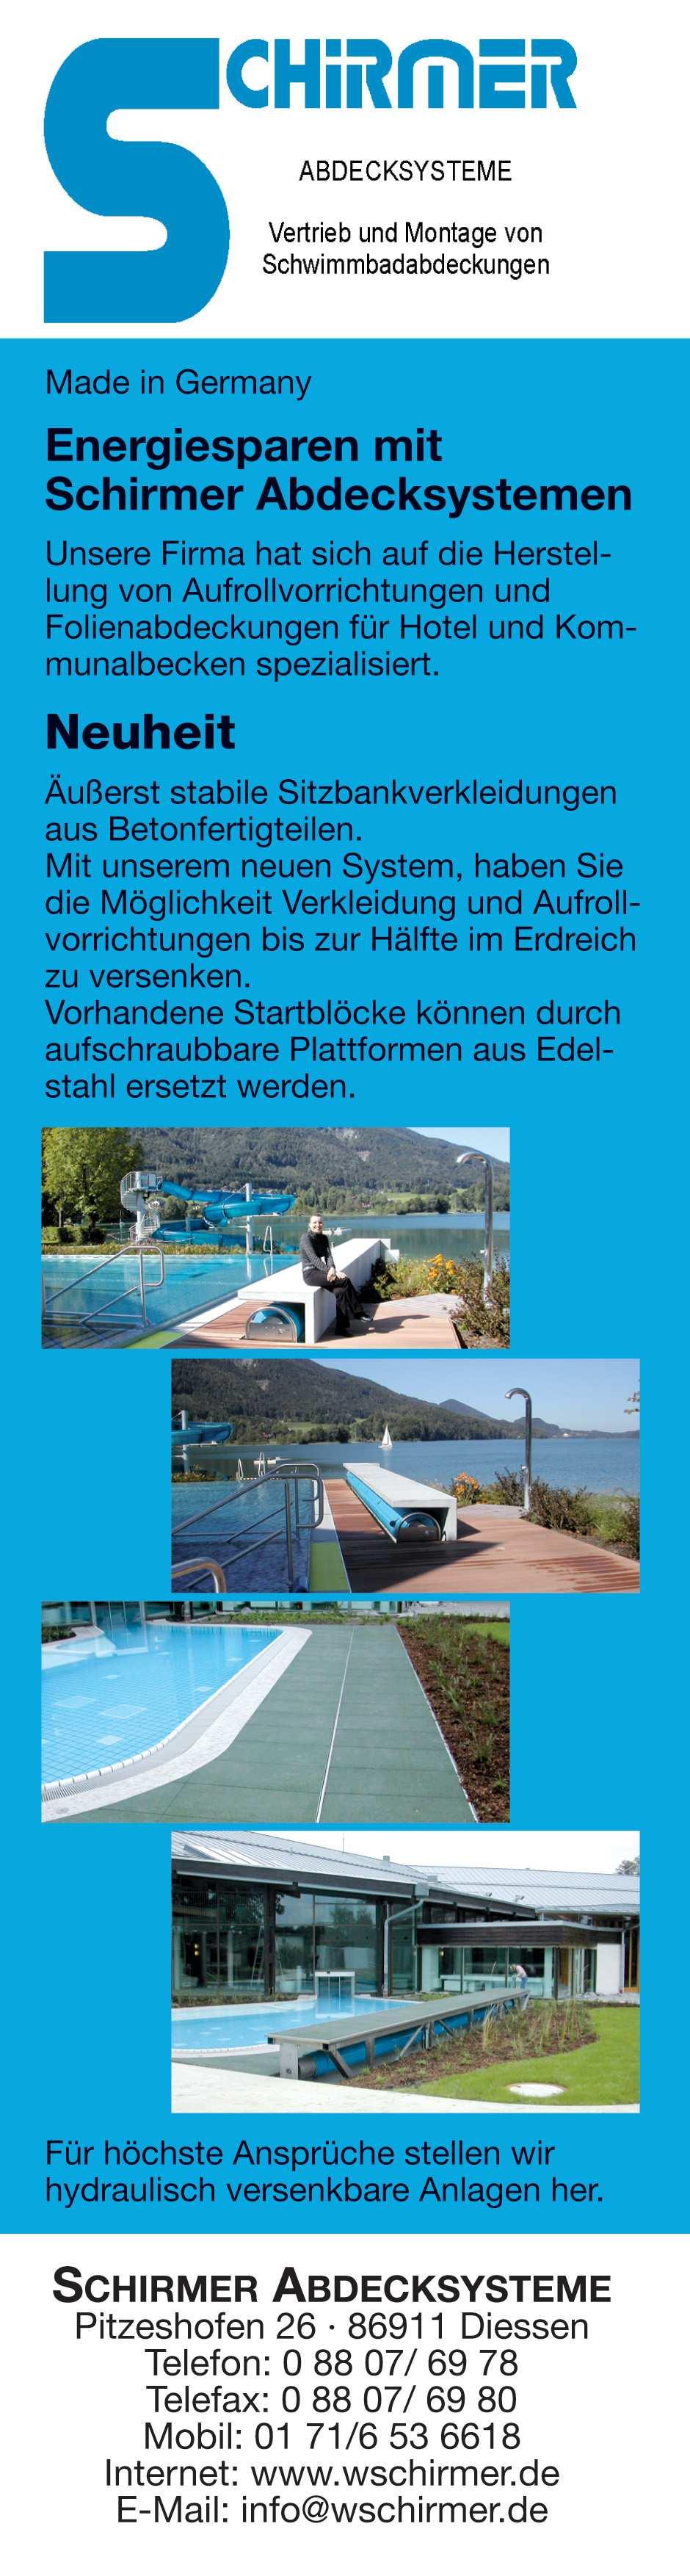 13 AB Archiv des Badewesens 01/2010 Bäderbau Planung Schwimm- und Badeteiche bzw. Kleinbadeteiche Im Gegensatz dazu sind die in Deutschland ausgeführten Schwimm- und Ba deteiche bzw.